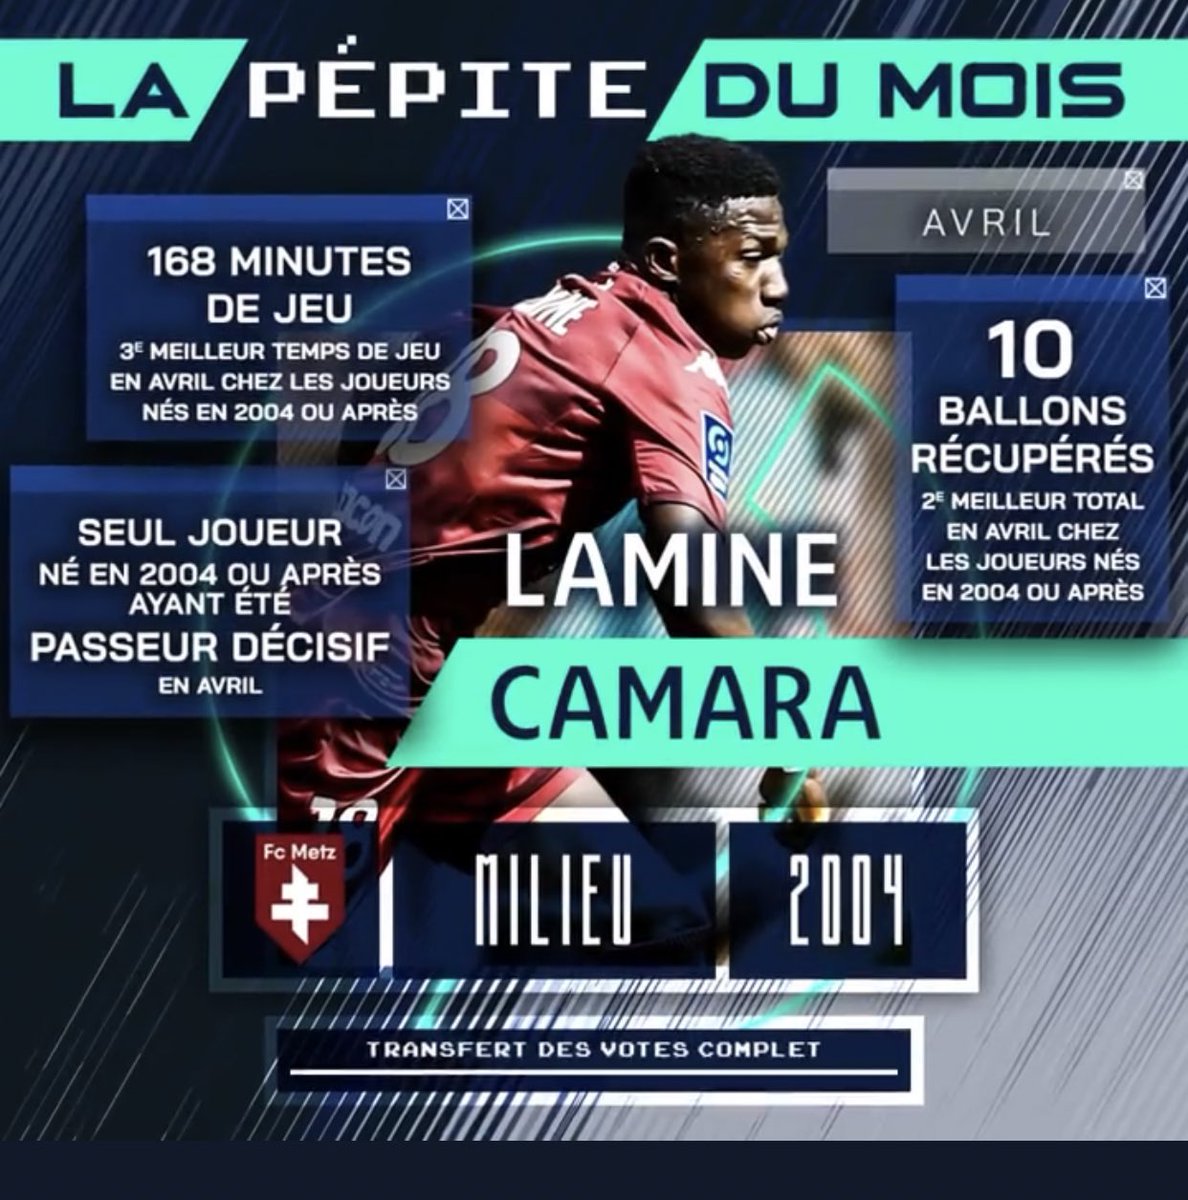 OFFICIEL ! Lamine Camara est élu pépite du mois d'avril en Ligue 2.🇸🇳👏